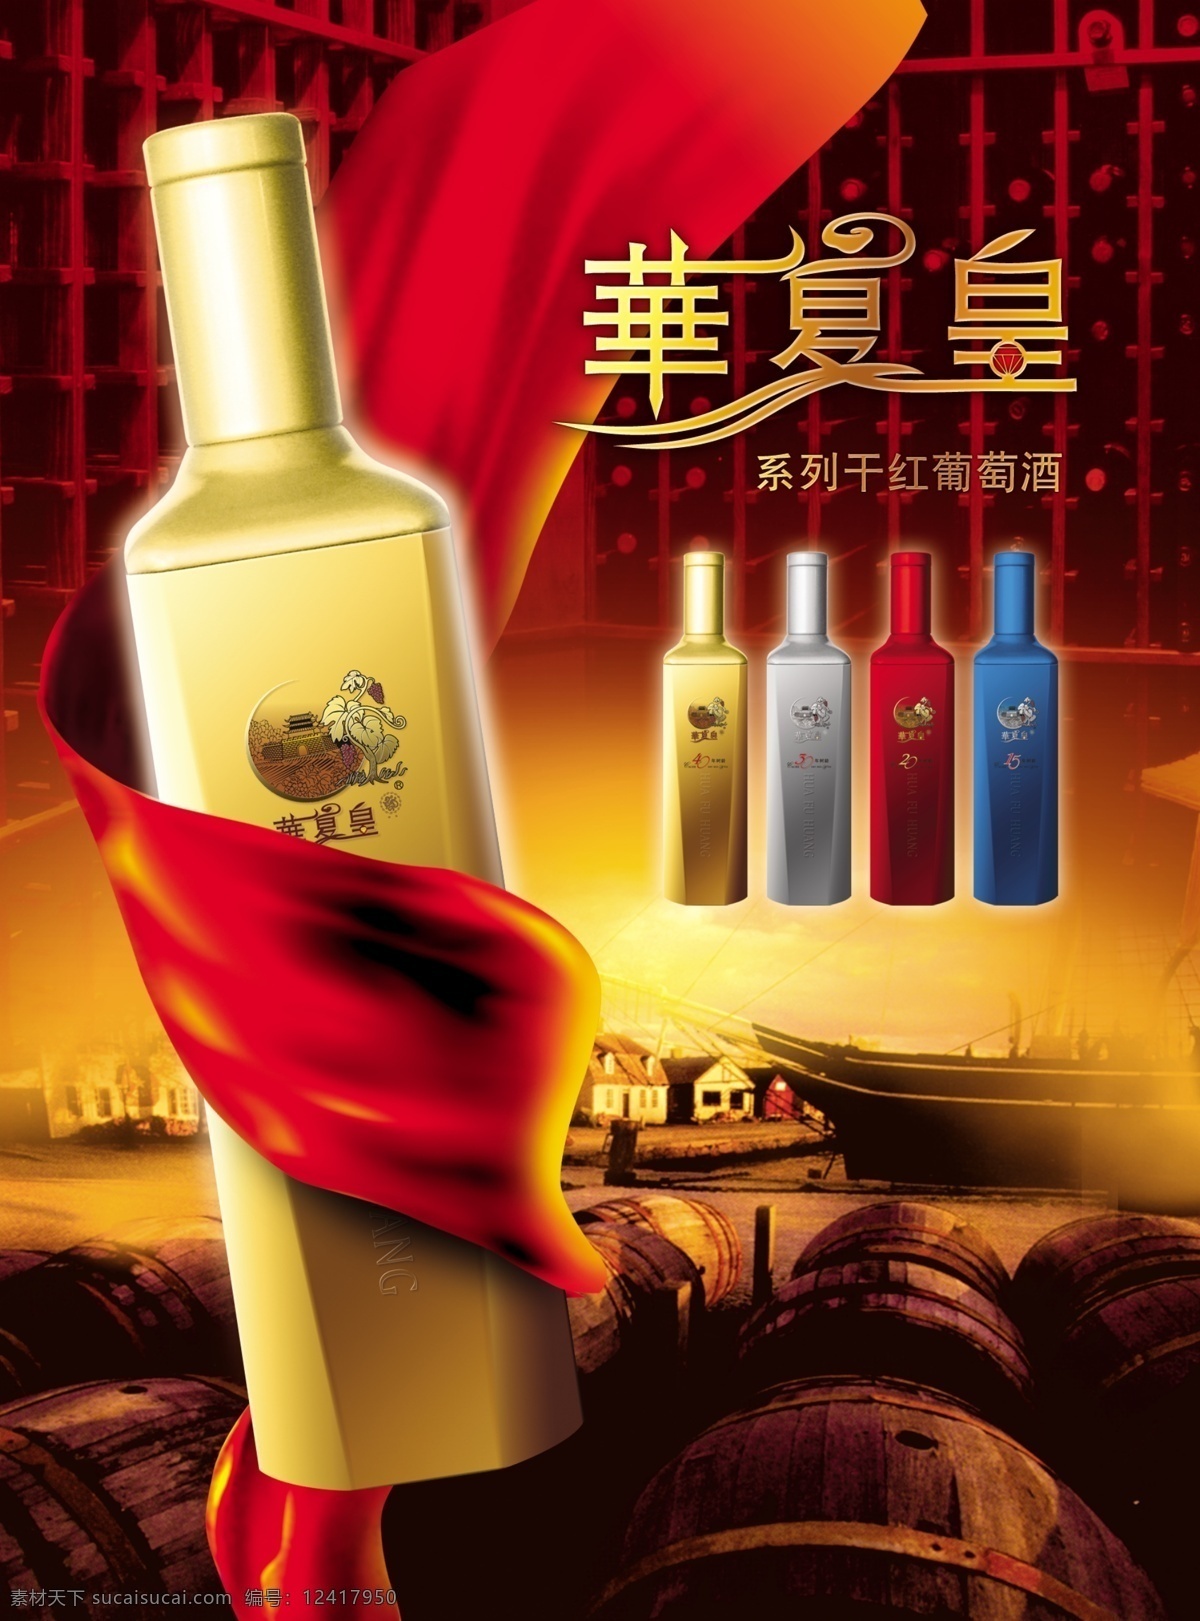 花 夏 皇干 红葡萄酒 花夏皇 丝带 酒业文化 干红葡萄酒 系列产品 古老 psd素材 分层素材 红色